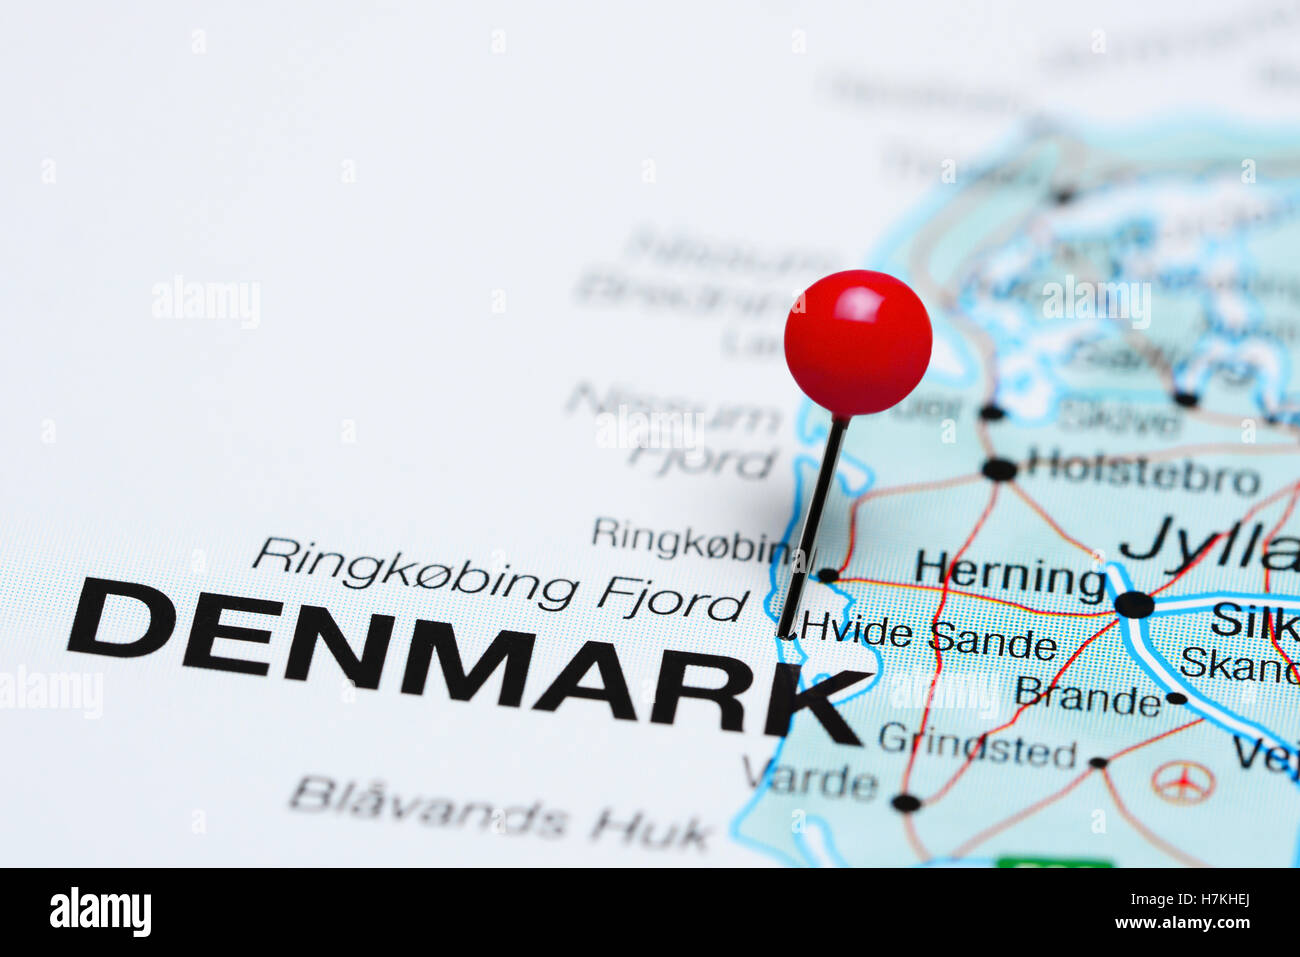 Hvide Sande pinned on a map of Denmark Stock Photo